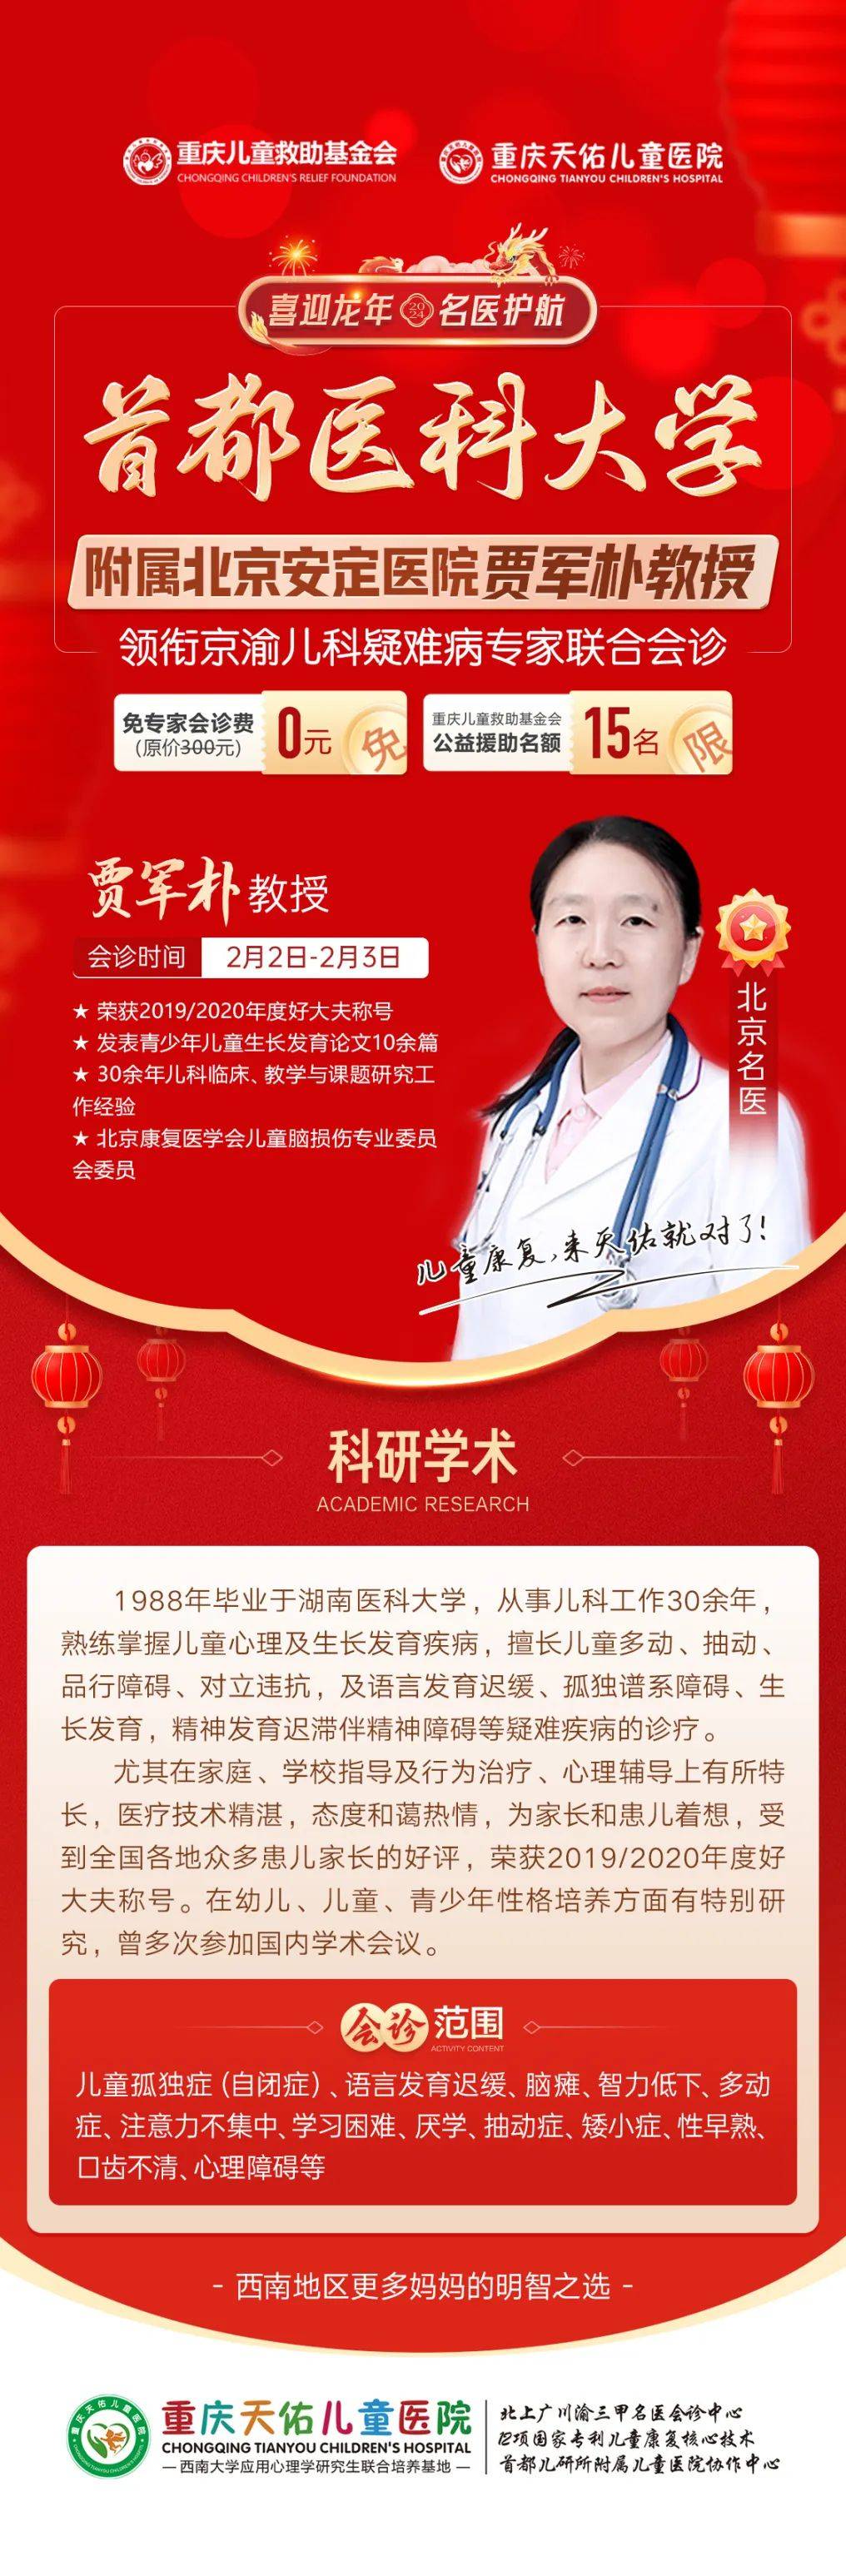 重庆天佑儿童医院特邀北京安定医院贾军朴教授联合会诊!2月2-3日为孩子健康保驾护航